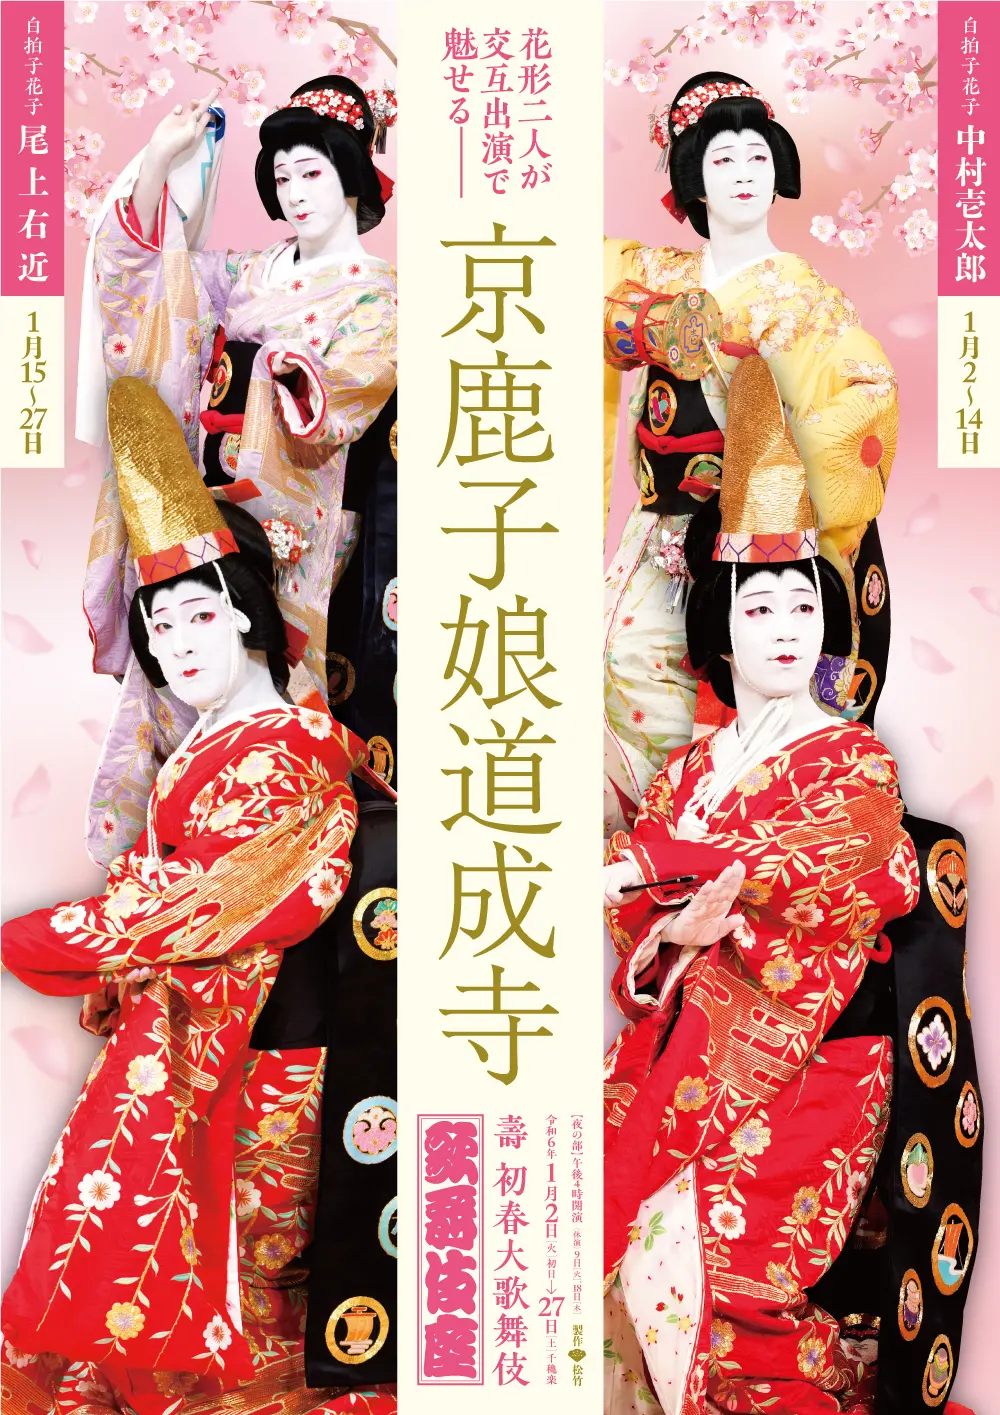 京鹿子娘道成寺のポスター